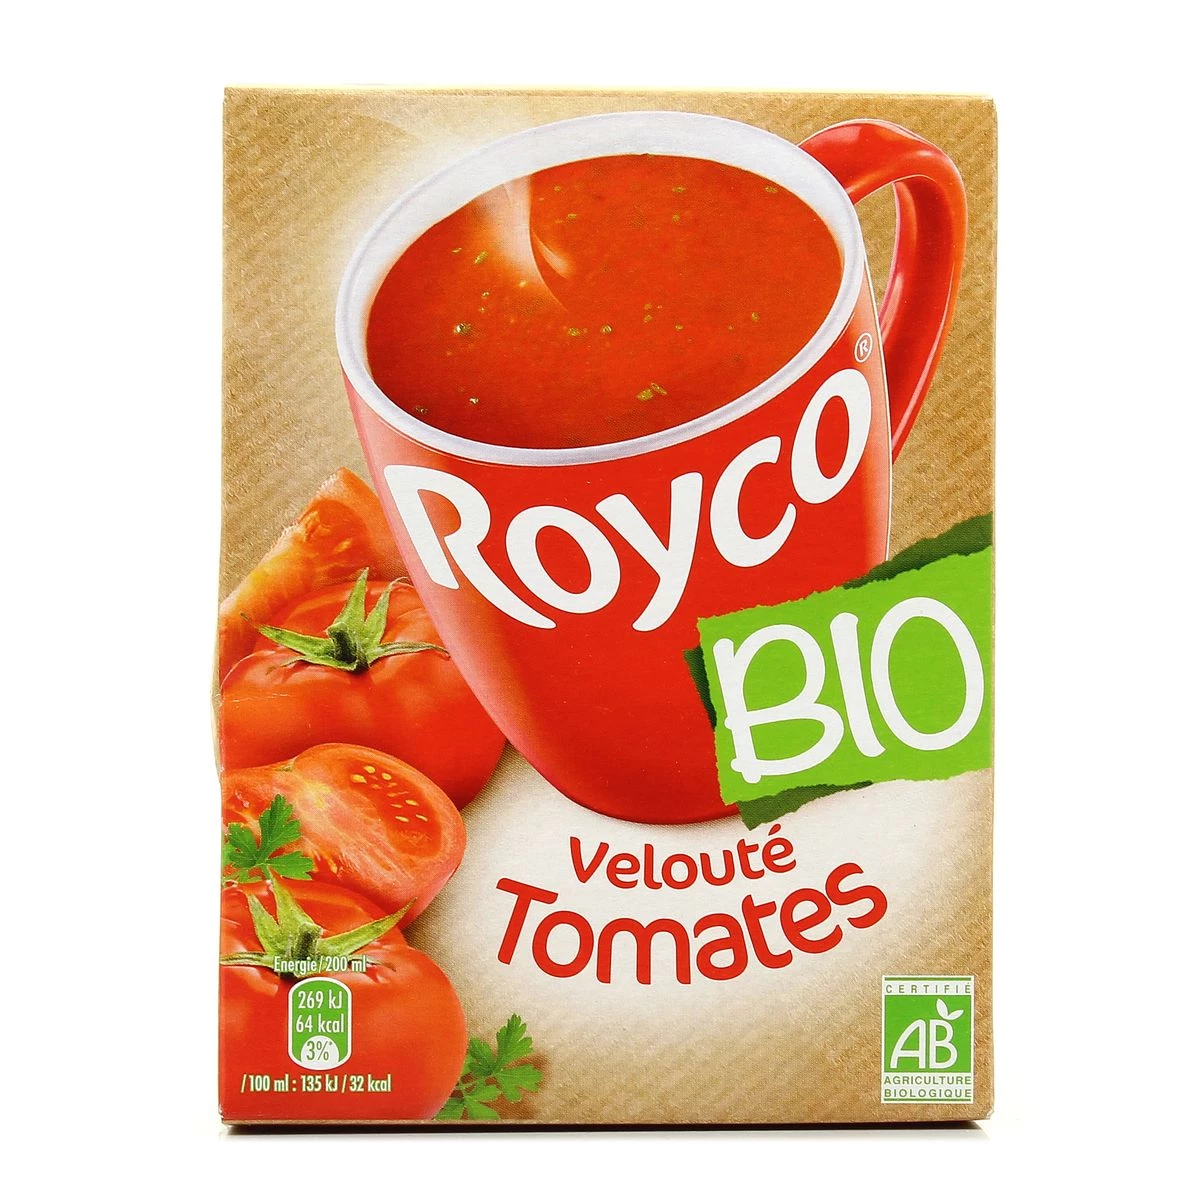 Veloute tomates bio 100ml x3 - ROYCO